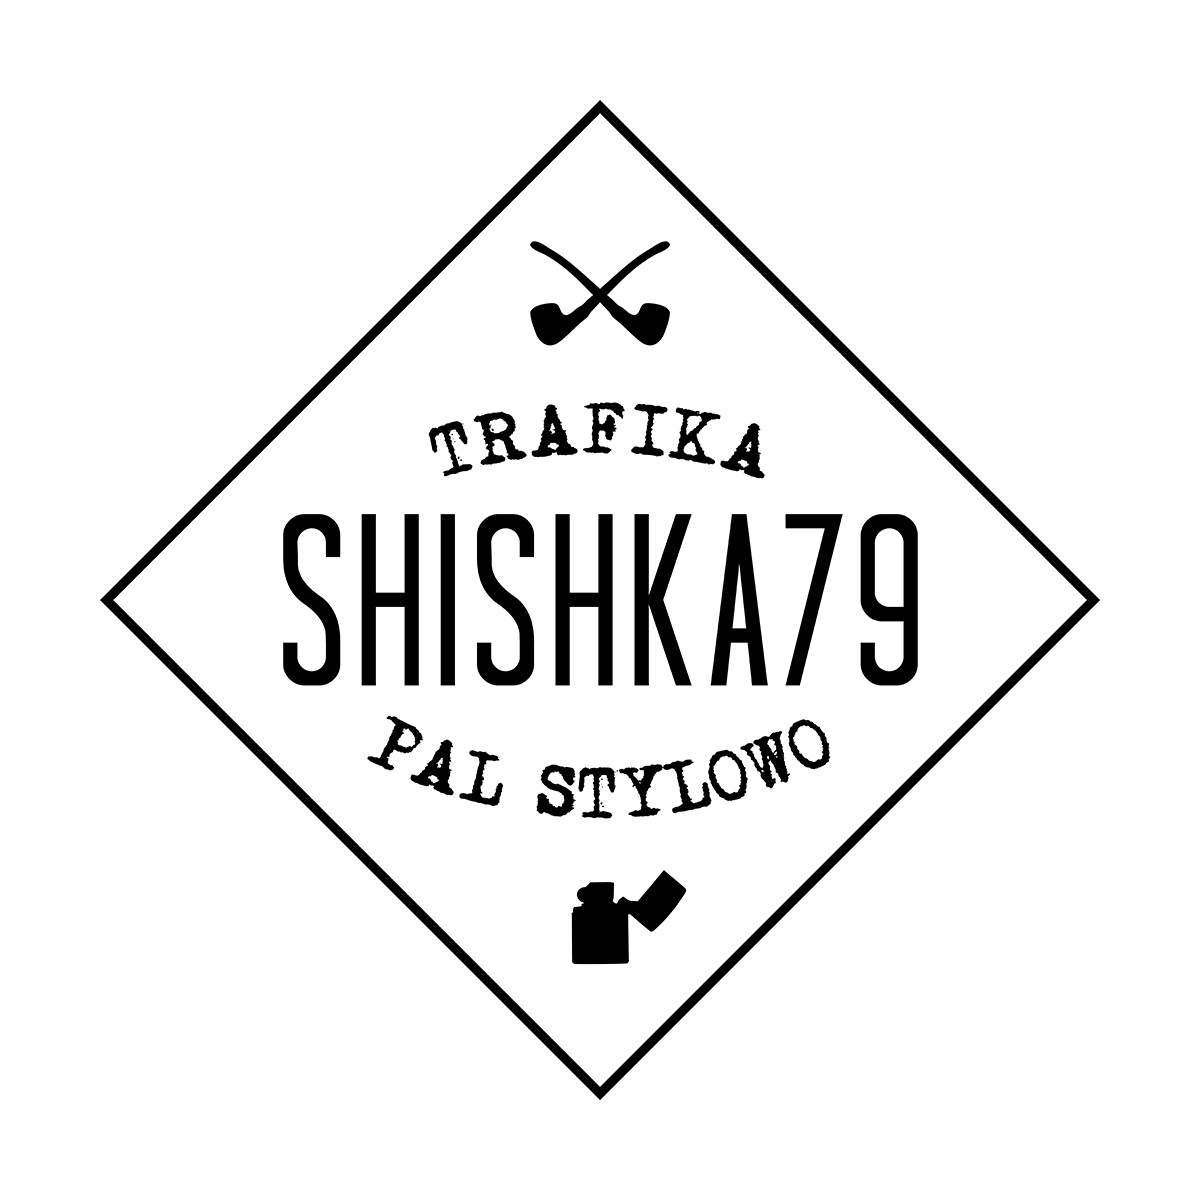 Shishka79 - Łódź